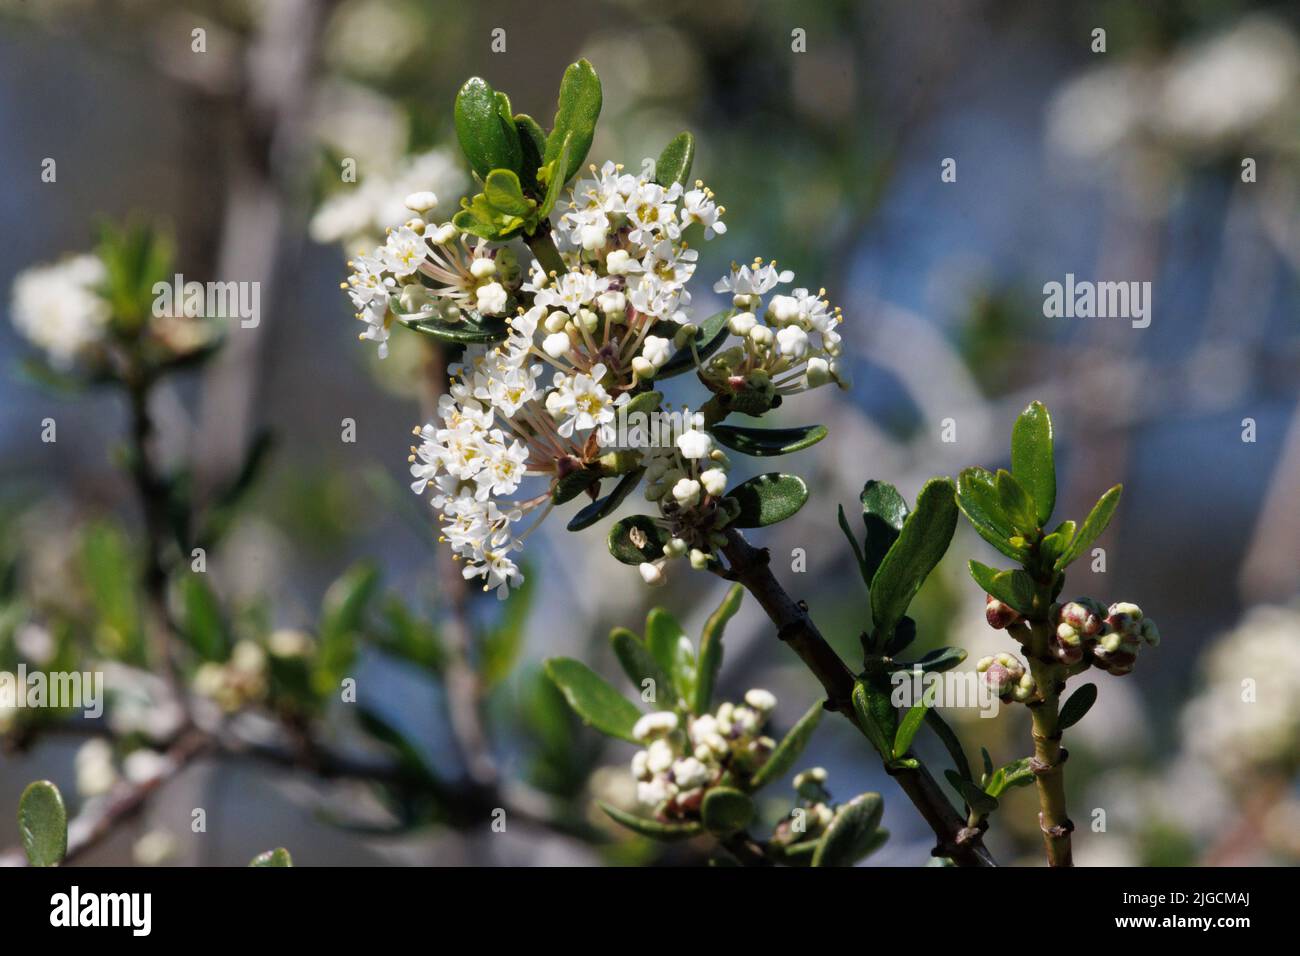 Weiß blühende Cymose-Doldenblüten von Ceanothus Cuneatus, Rhamnaceae, einheimischer immergrüner Strauch in den Santa Monica Mountains, Winter. Stockfoto